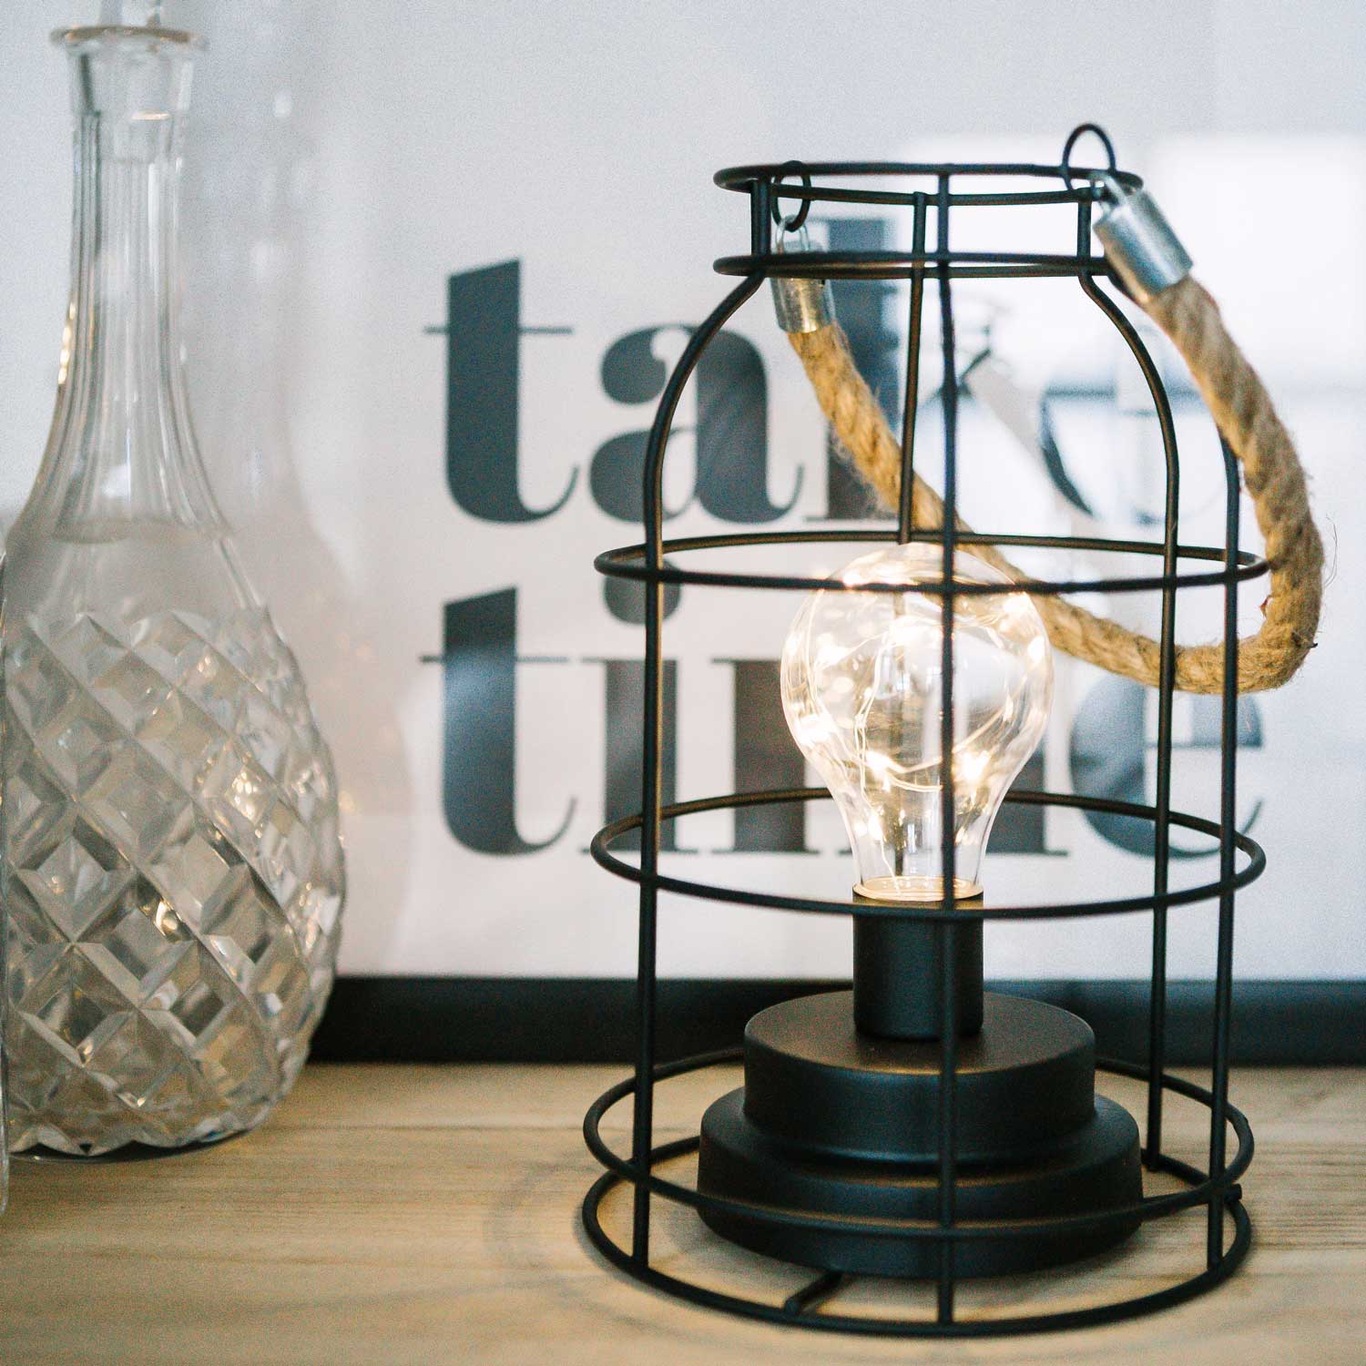 https://royaldesign.com/image/2/dorre-landsort-lantern-with-led-lamp-2?w=800&quality=80